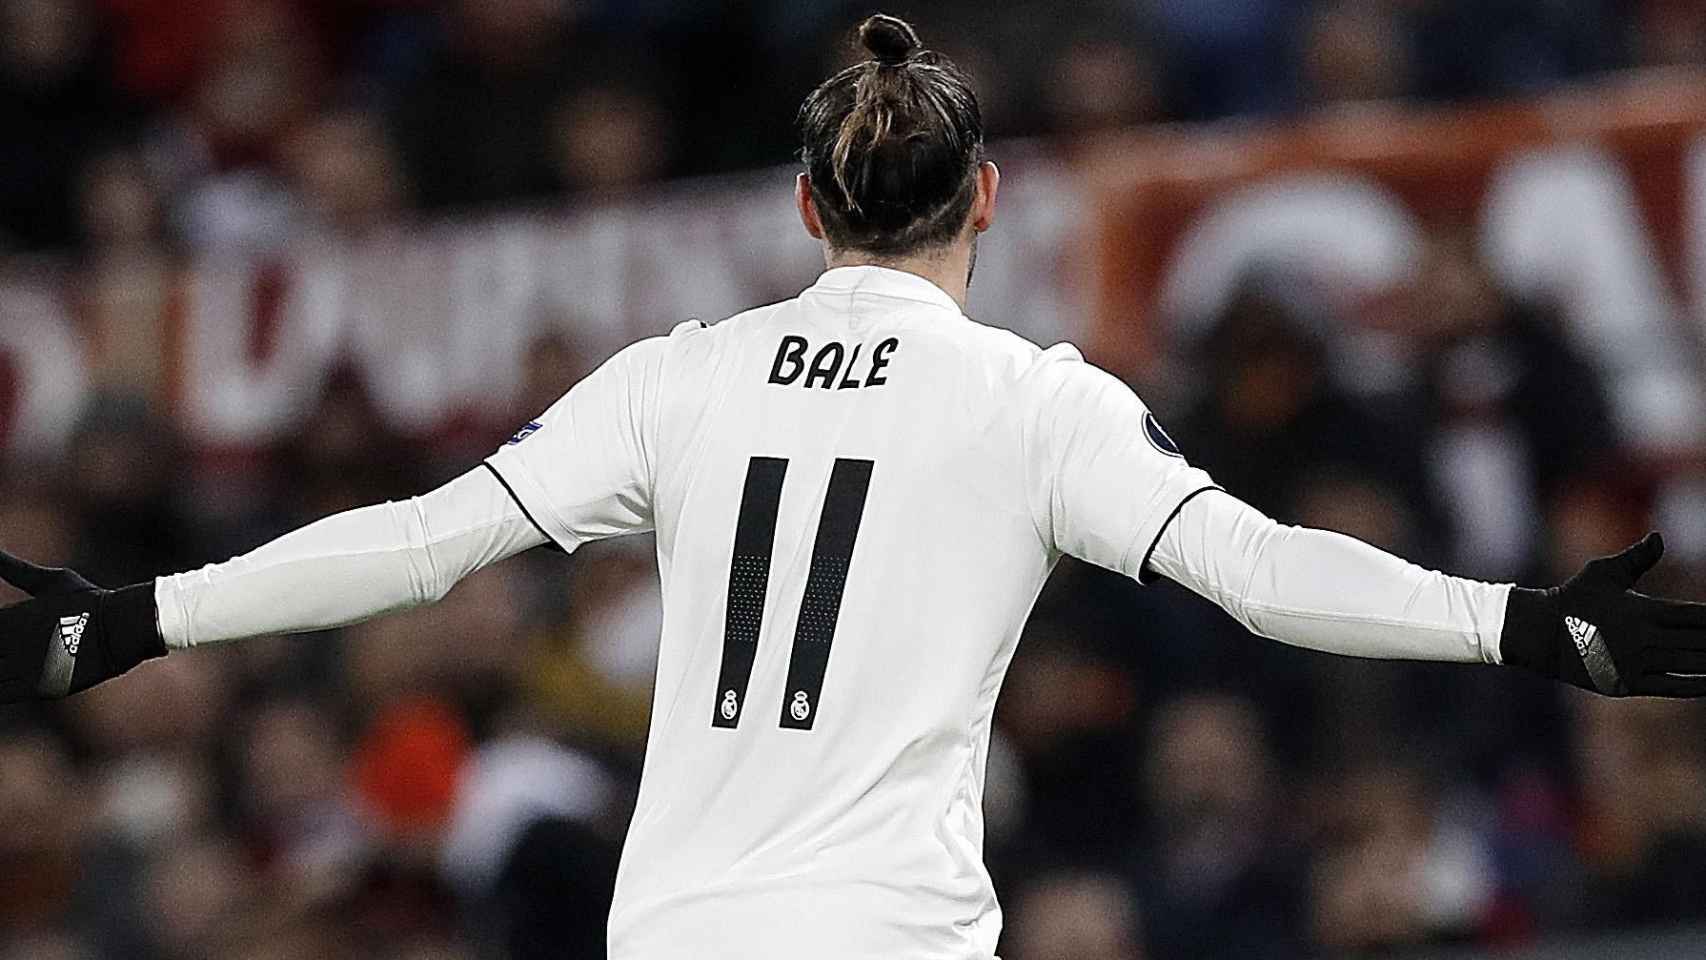 Gareth Bale celebra su gol ante la Roma